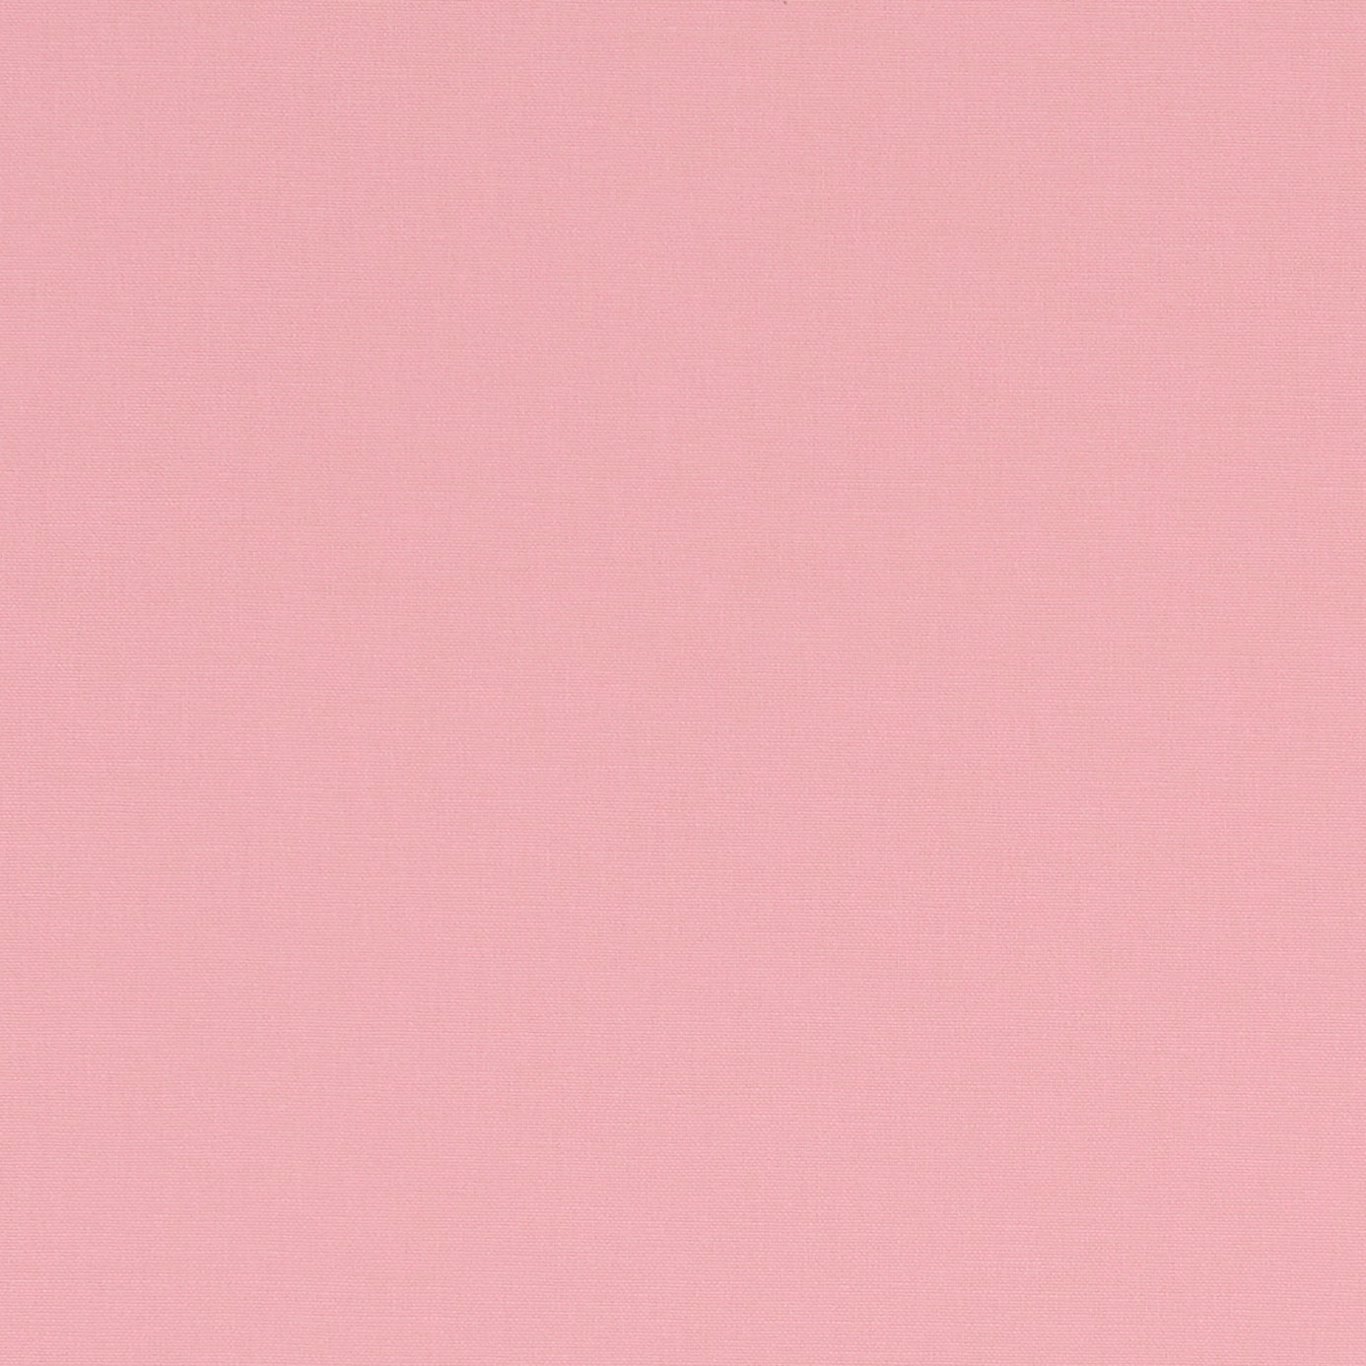 Alora Pink Fabric by CNC